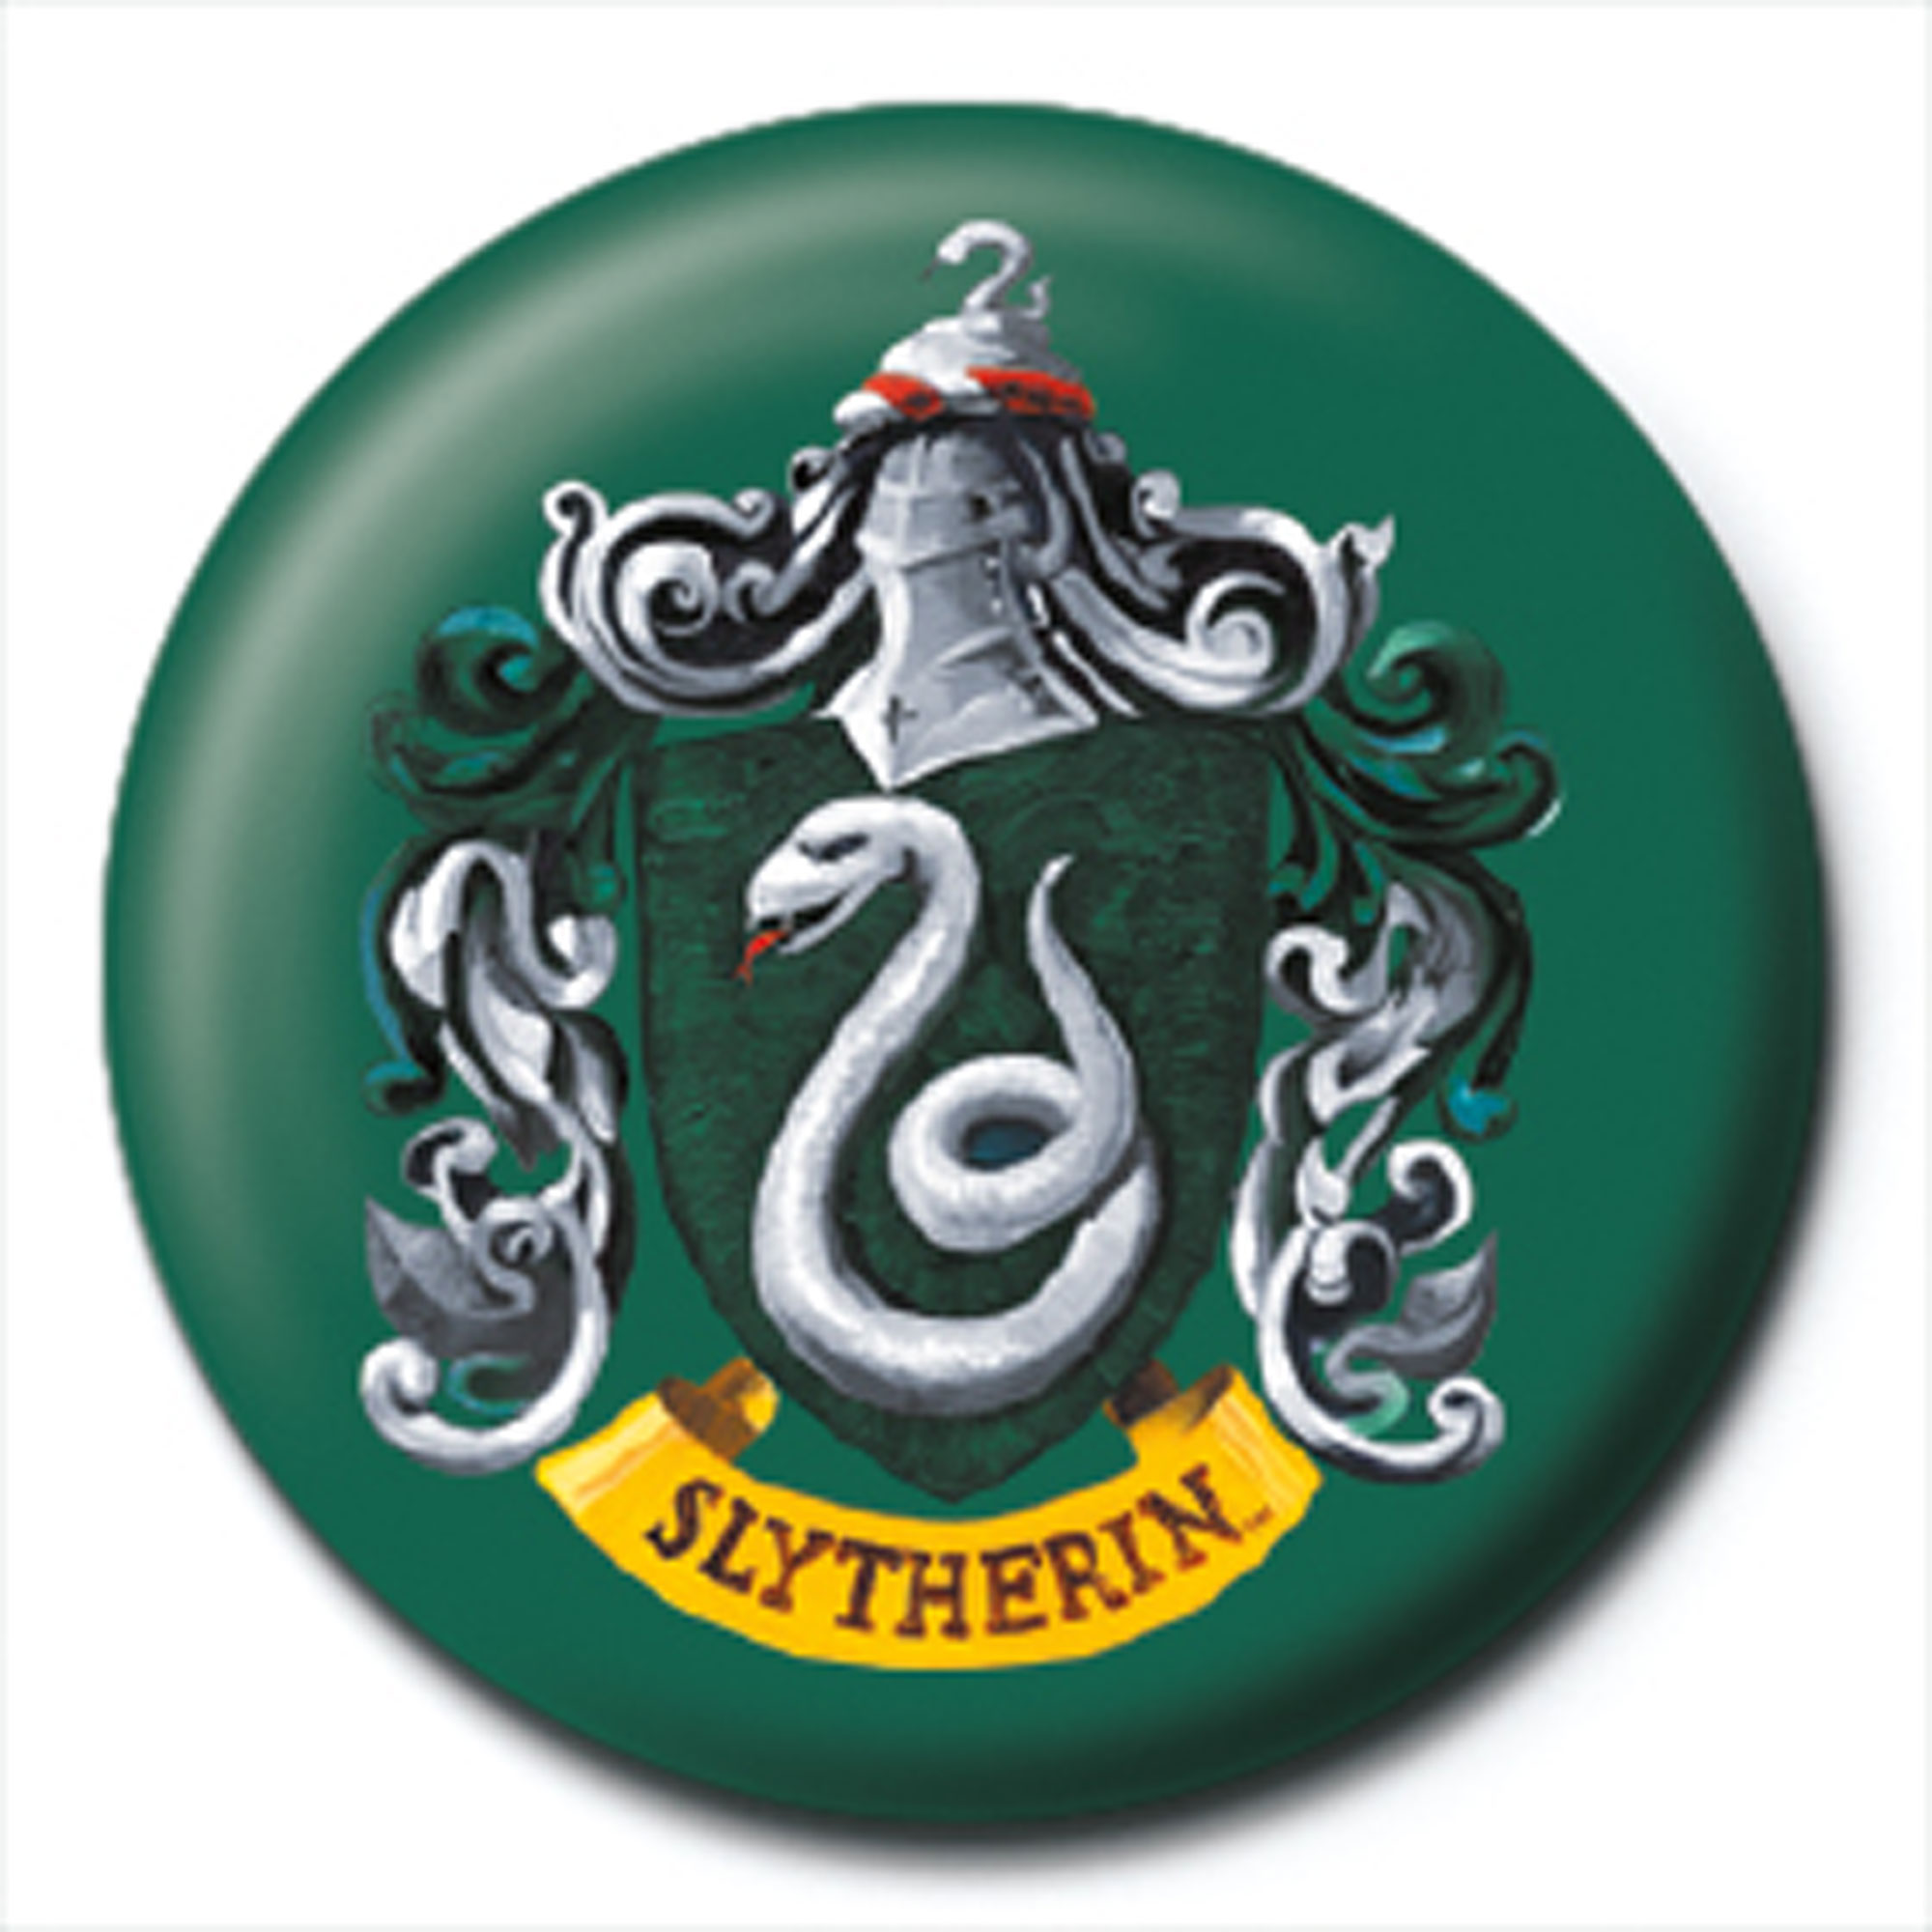 Harry Potter - Slytherin Crest